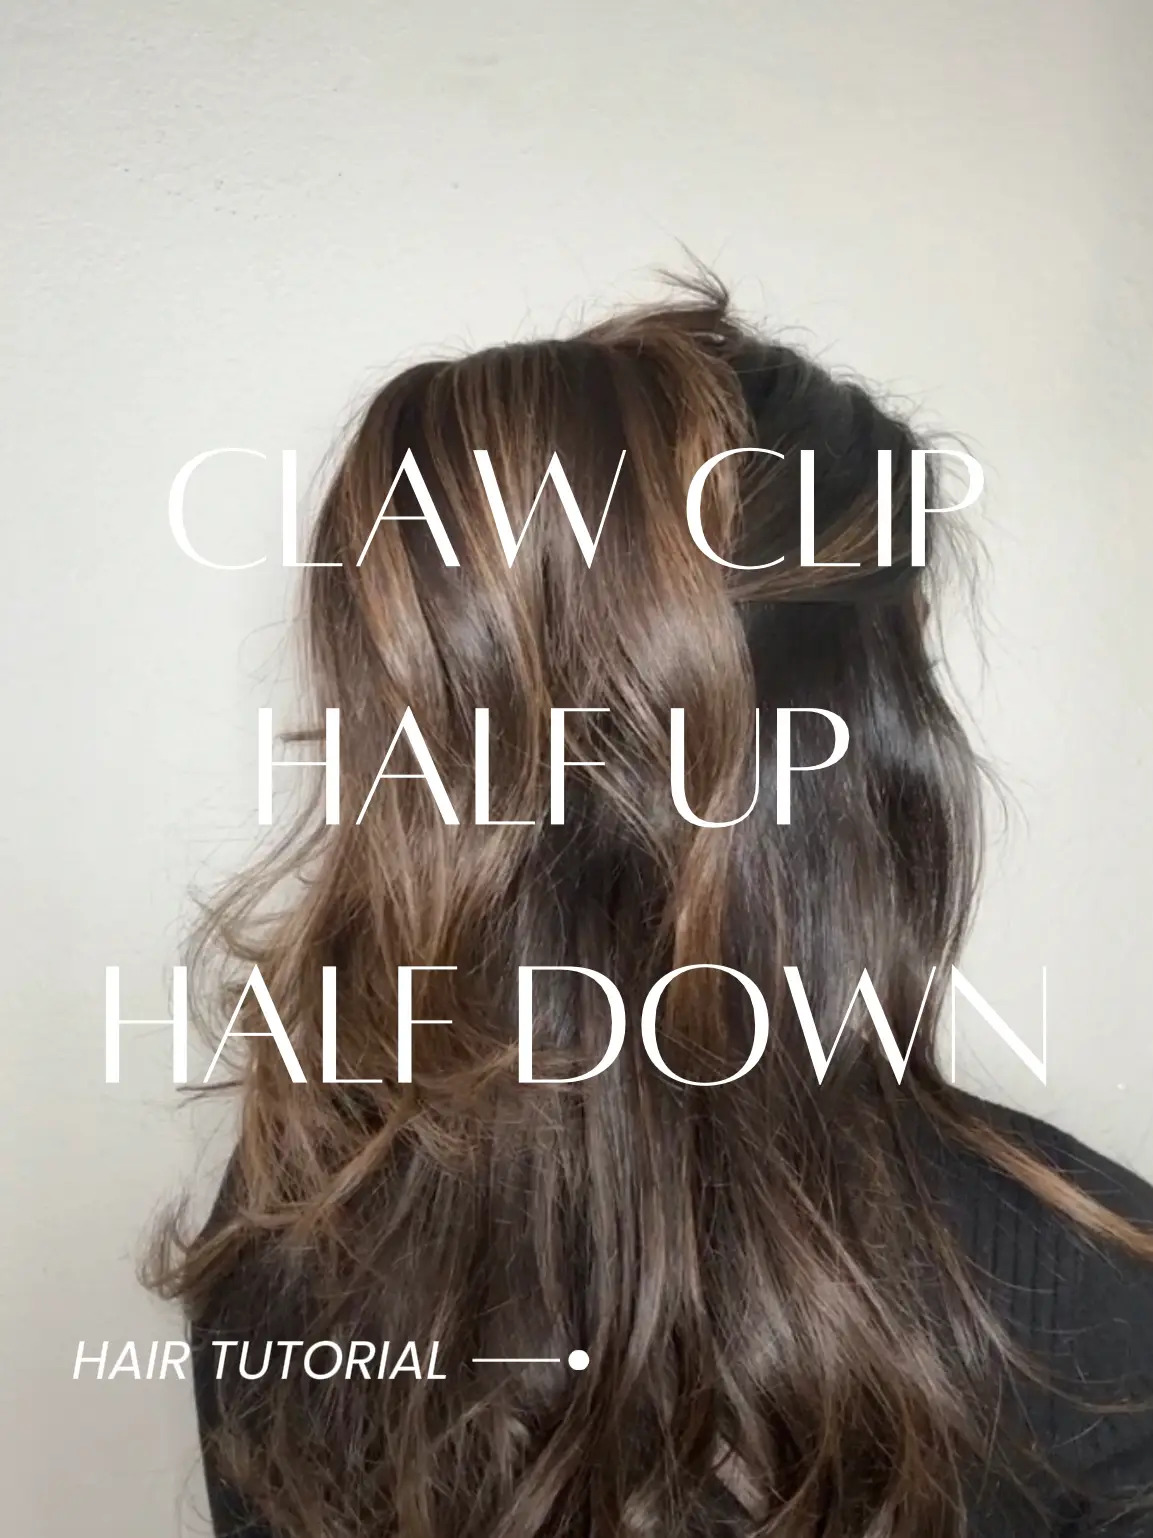 Half Up Half Down Claw Clip Tutorial